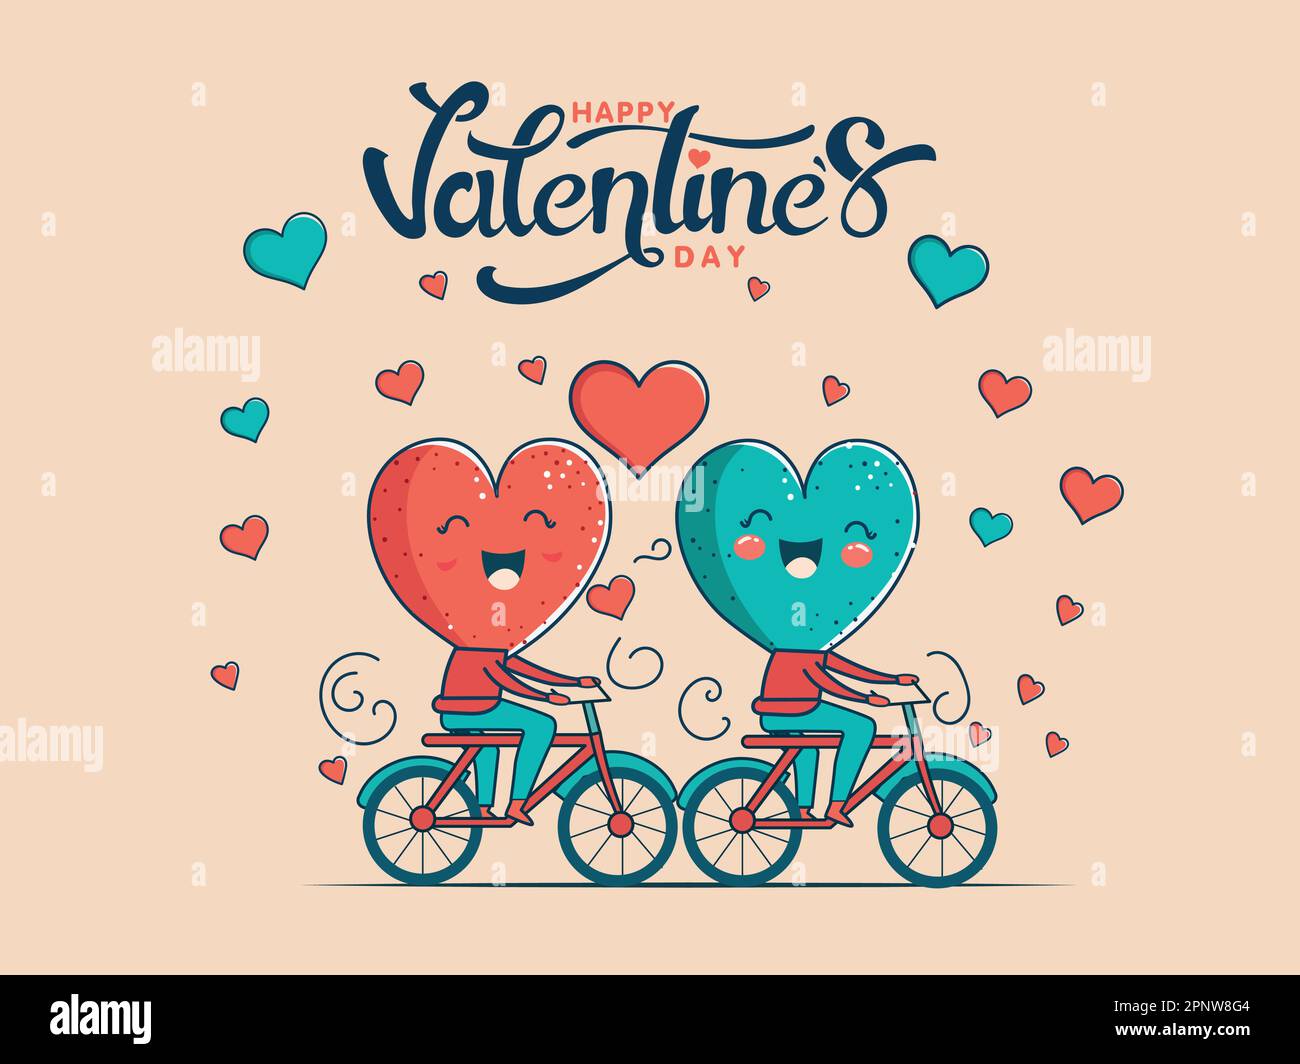 Happy Valentine's Day Konzept mit fröhlichen zwei Herzformen Charakter auf dem Fahrrad. Stock Vektor